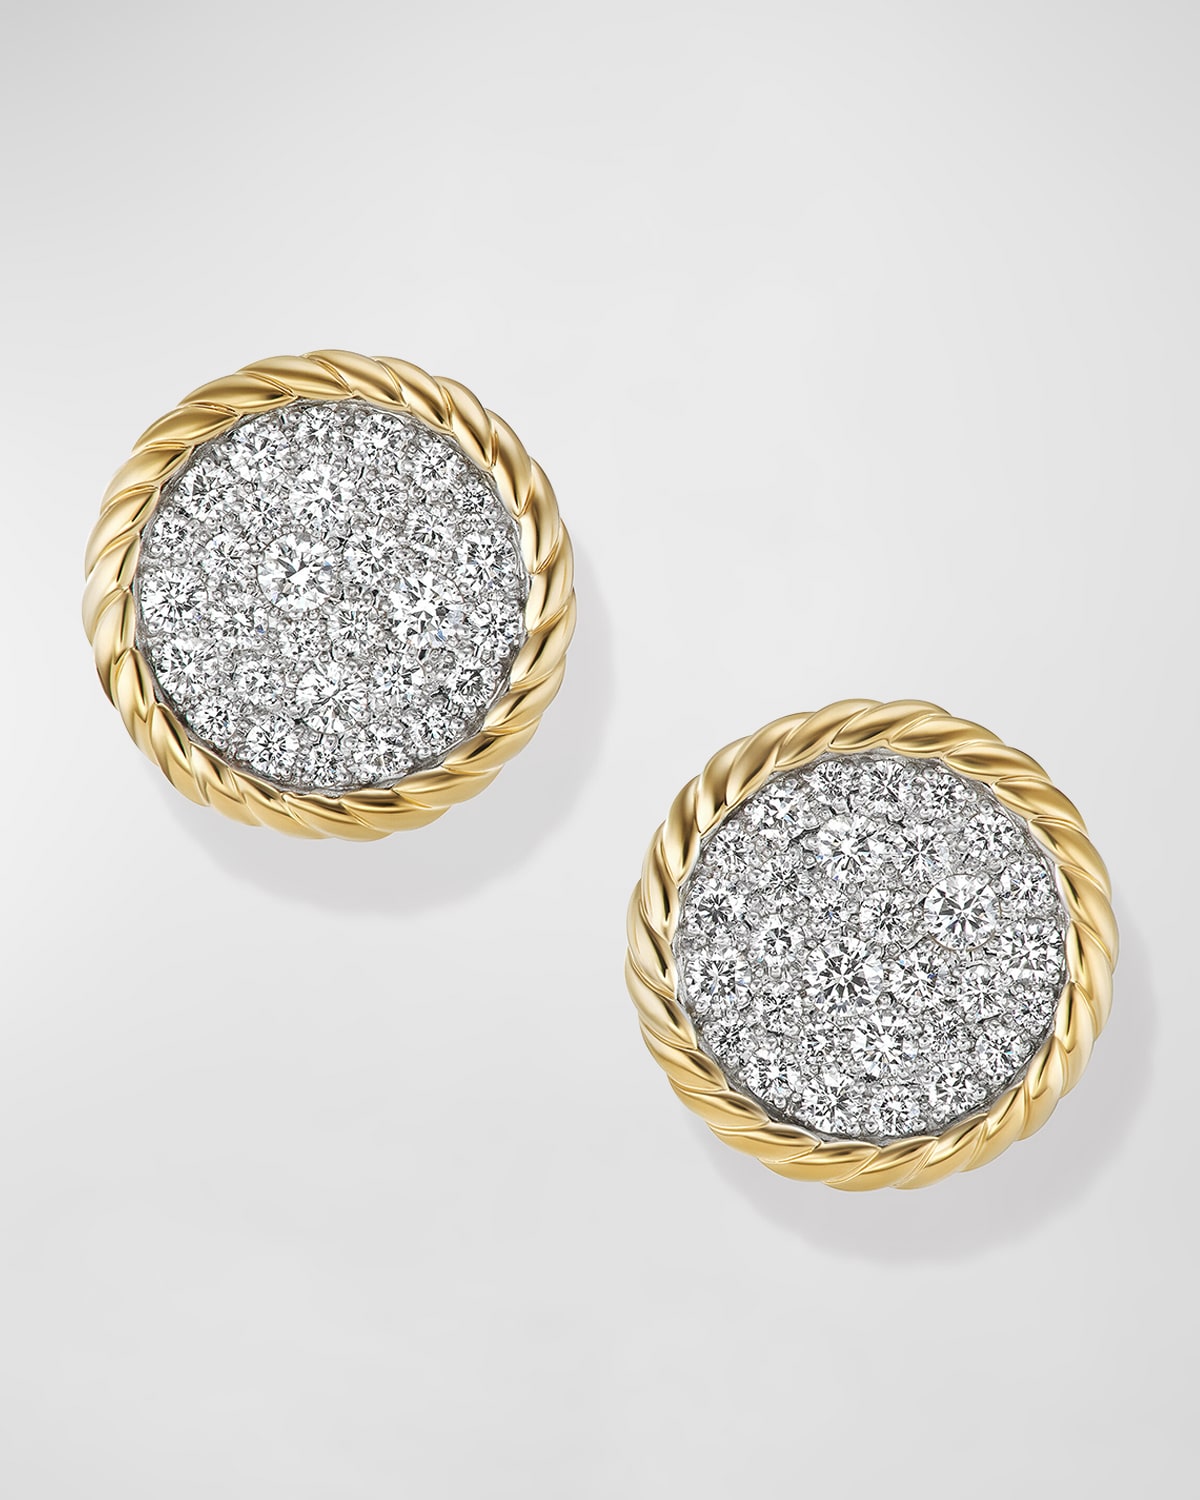 DAVID YURMAN ELEMENTS EARRINGS IN 18K GOLD WITH DIAMONDS, 11.5MM, 0.5"